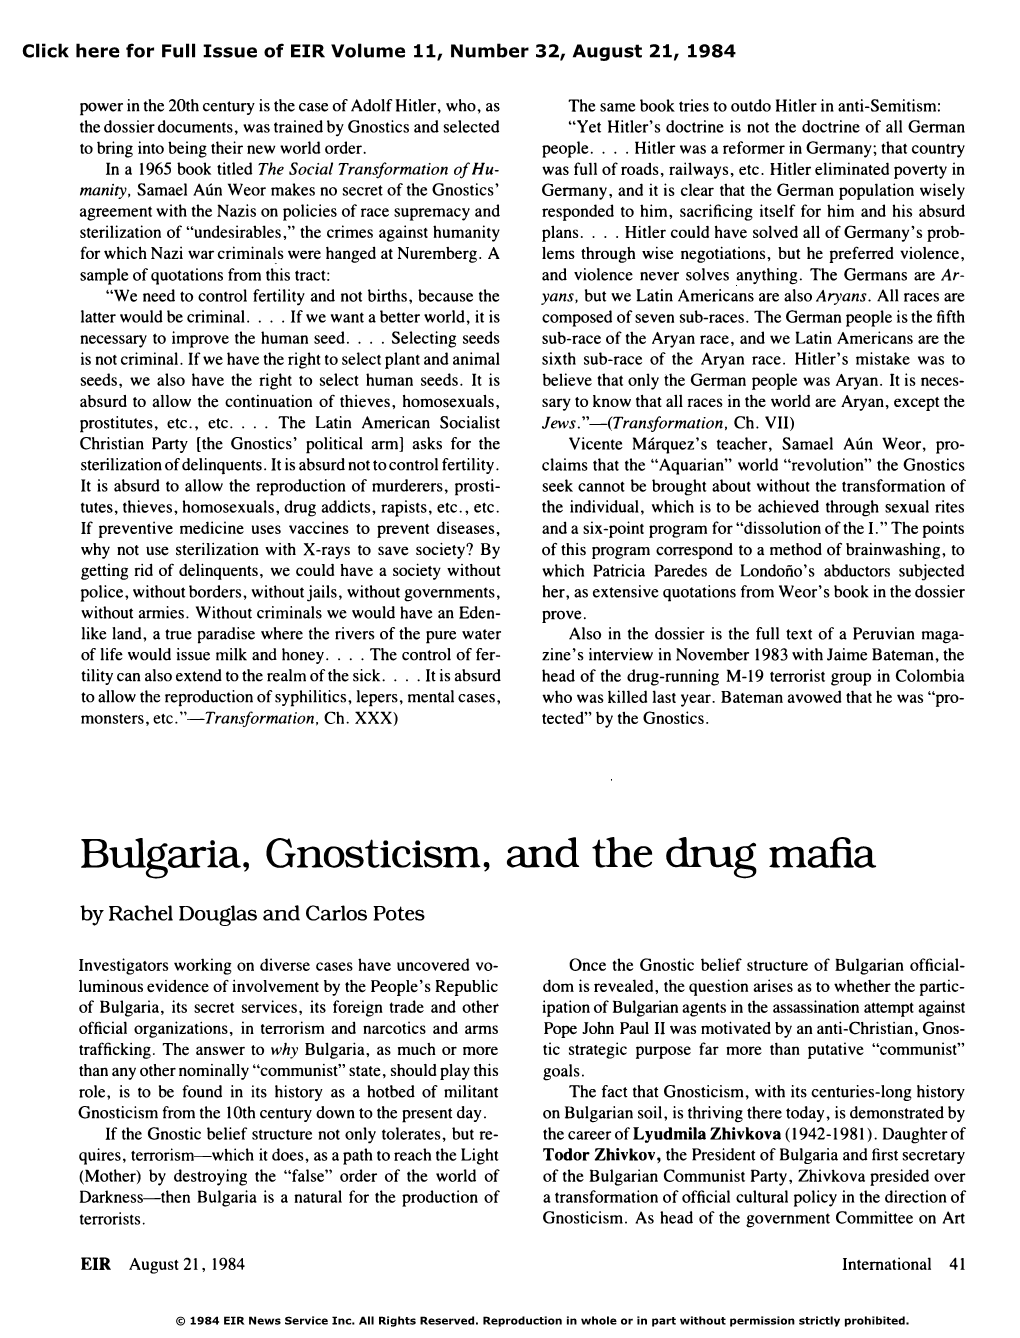 Bulgaria, Gnosticism, and the Drug Mafia